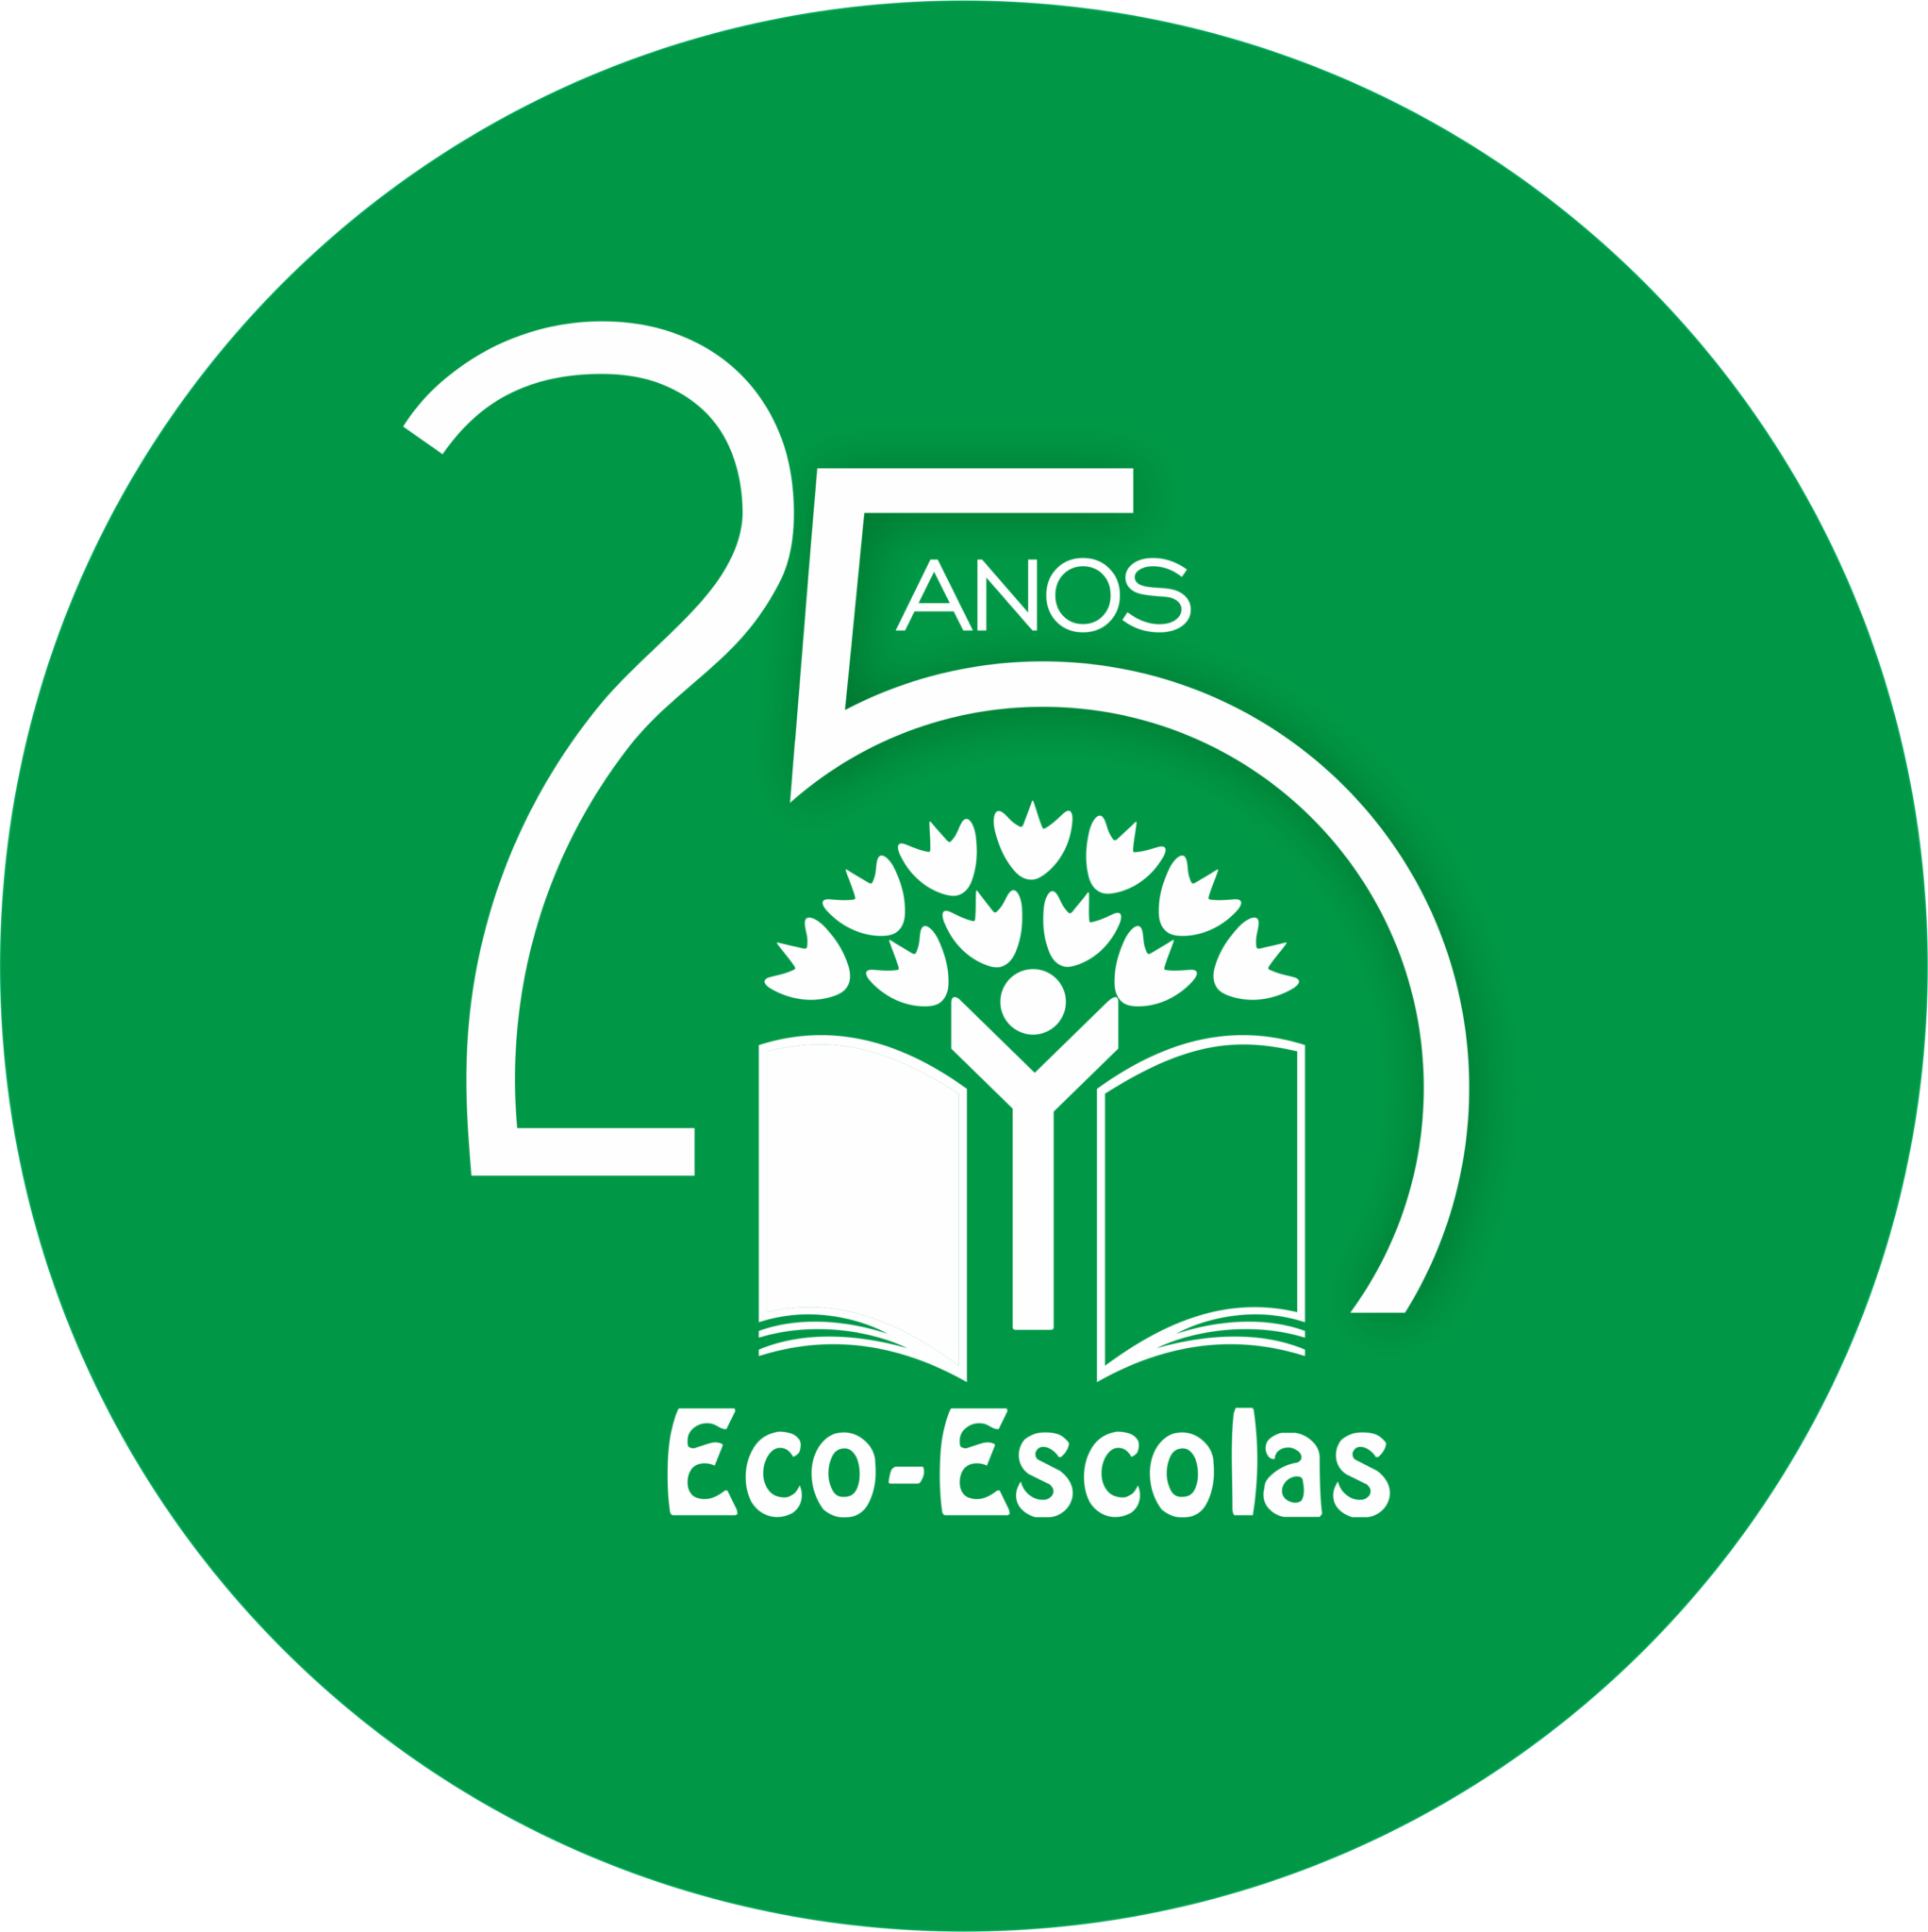 2021-homenageados-25-anos-eco-escolas-eco-escolas